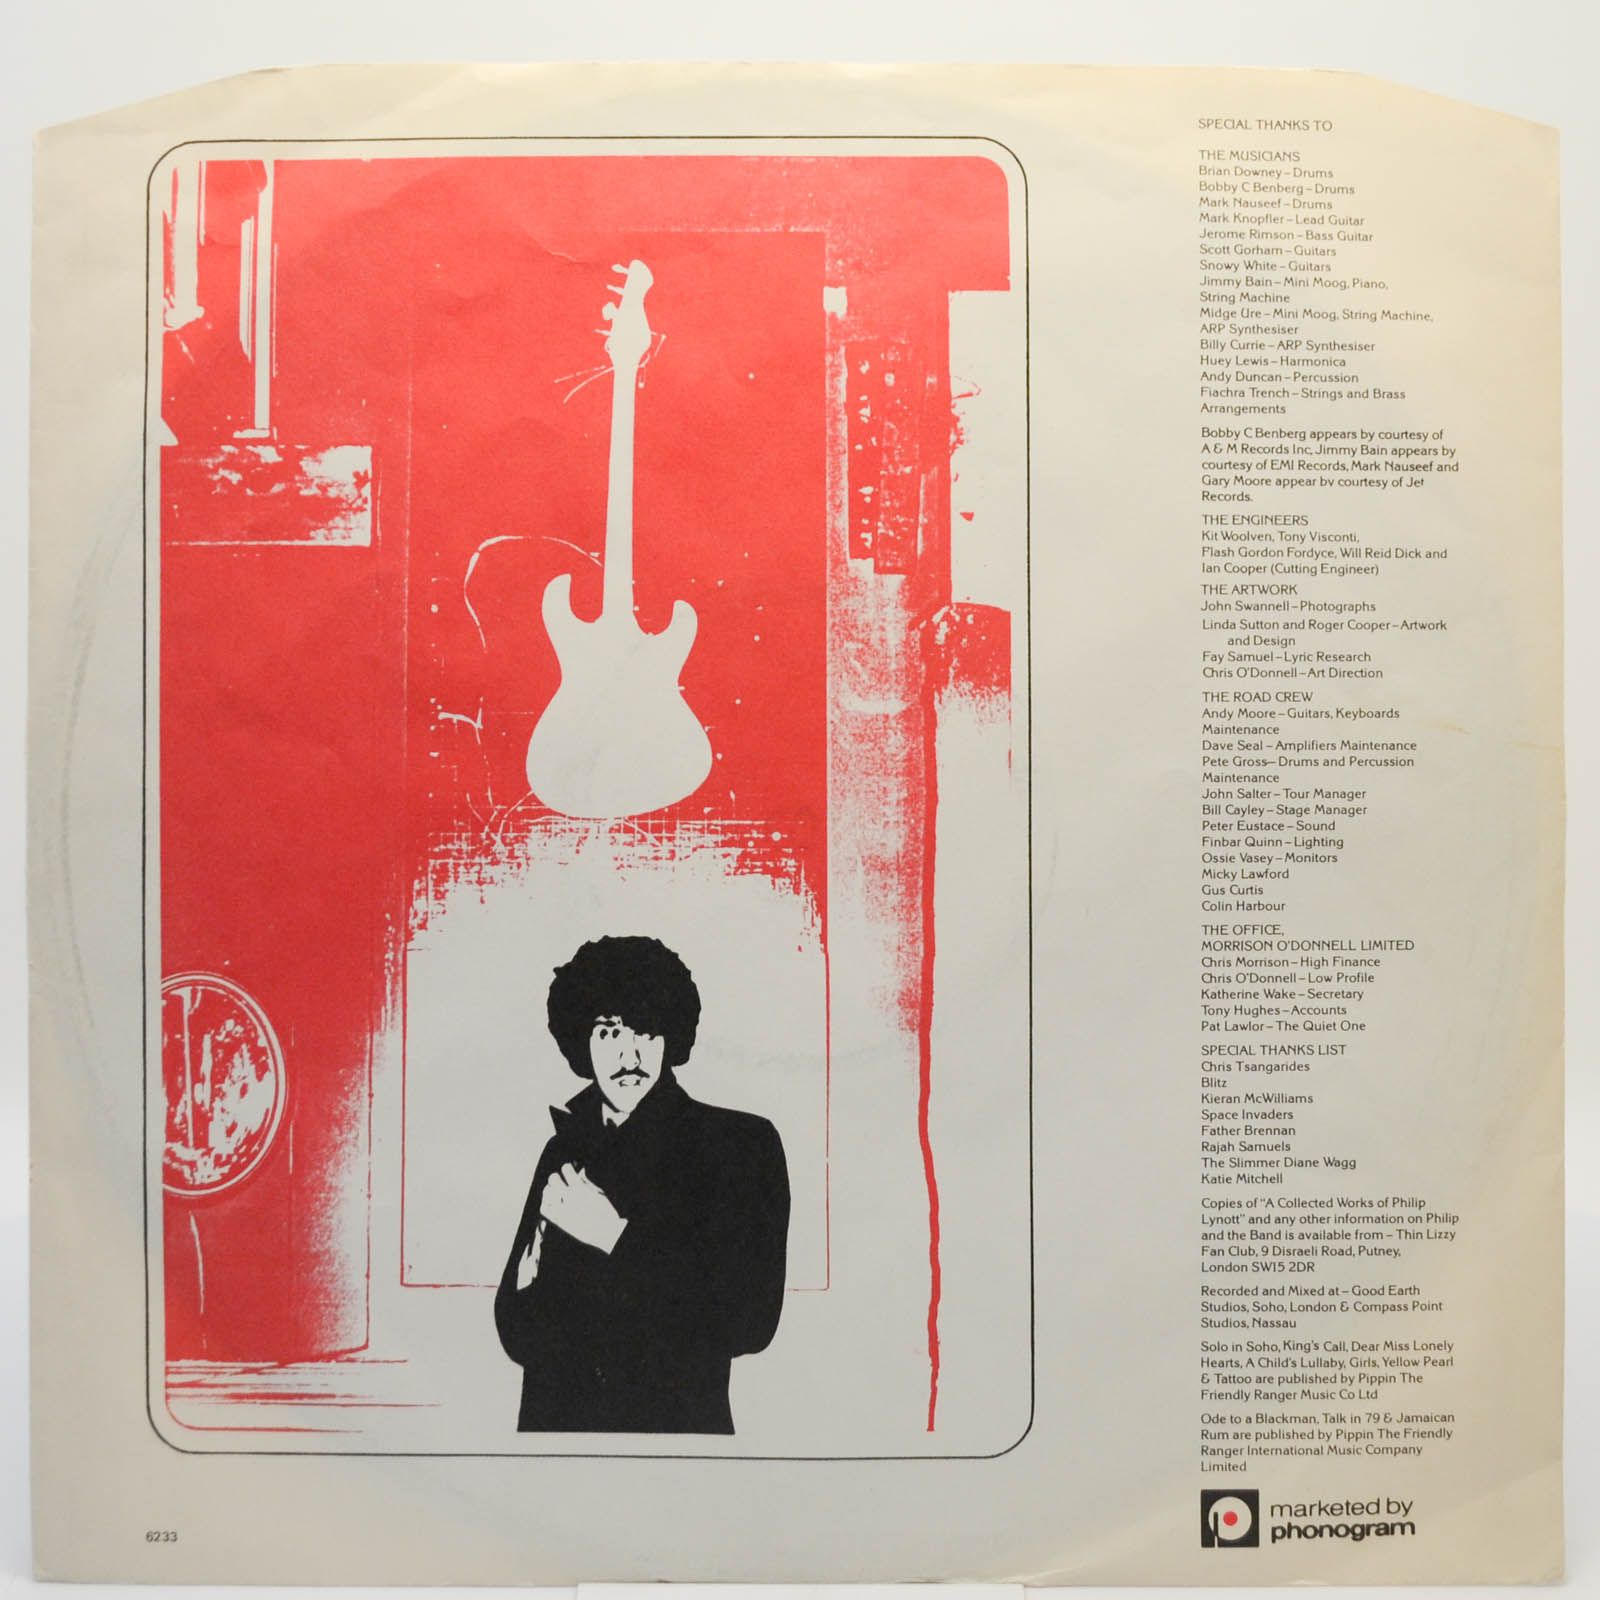 Philip Lynott — Solo In Soho, 1980